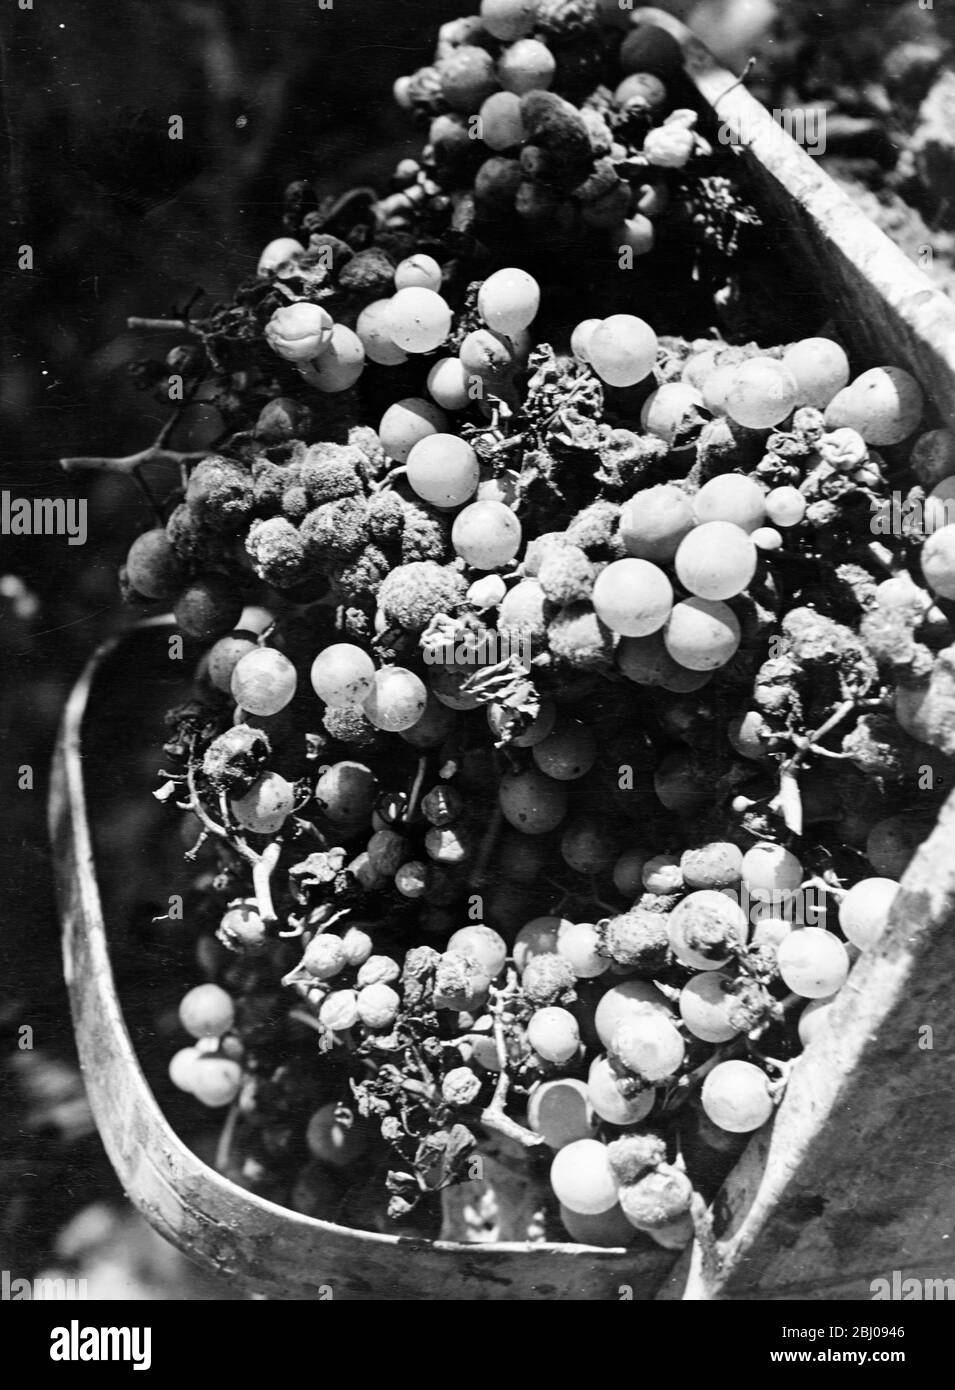 Französische Weinlese.0 - Weiße Trauben, nur mit einer Schere geschnitten. Dieser Haufen ist in einem idealen Zustand - fast faul, für unsere Augen, aber voller Zucker. Genannt die Möbel edel (die edle Fäule). - 1951 Stockfoto